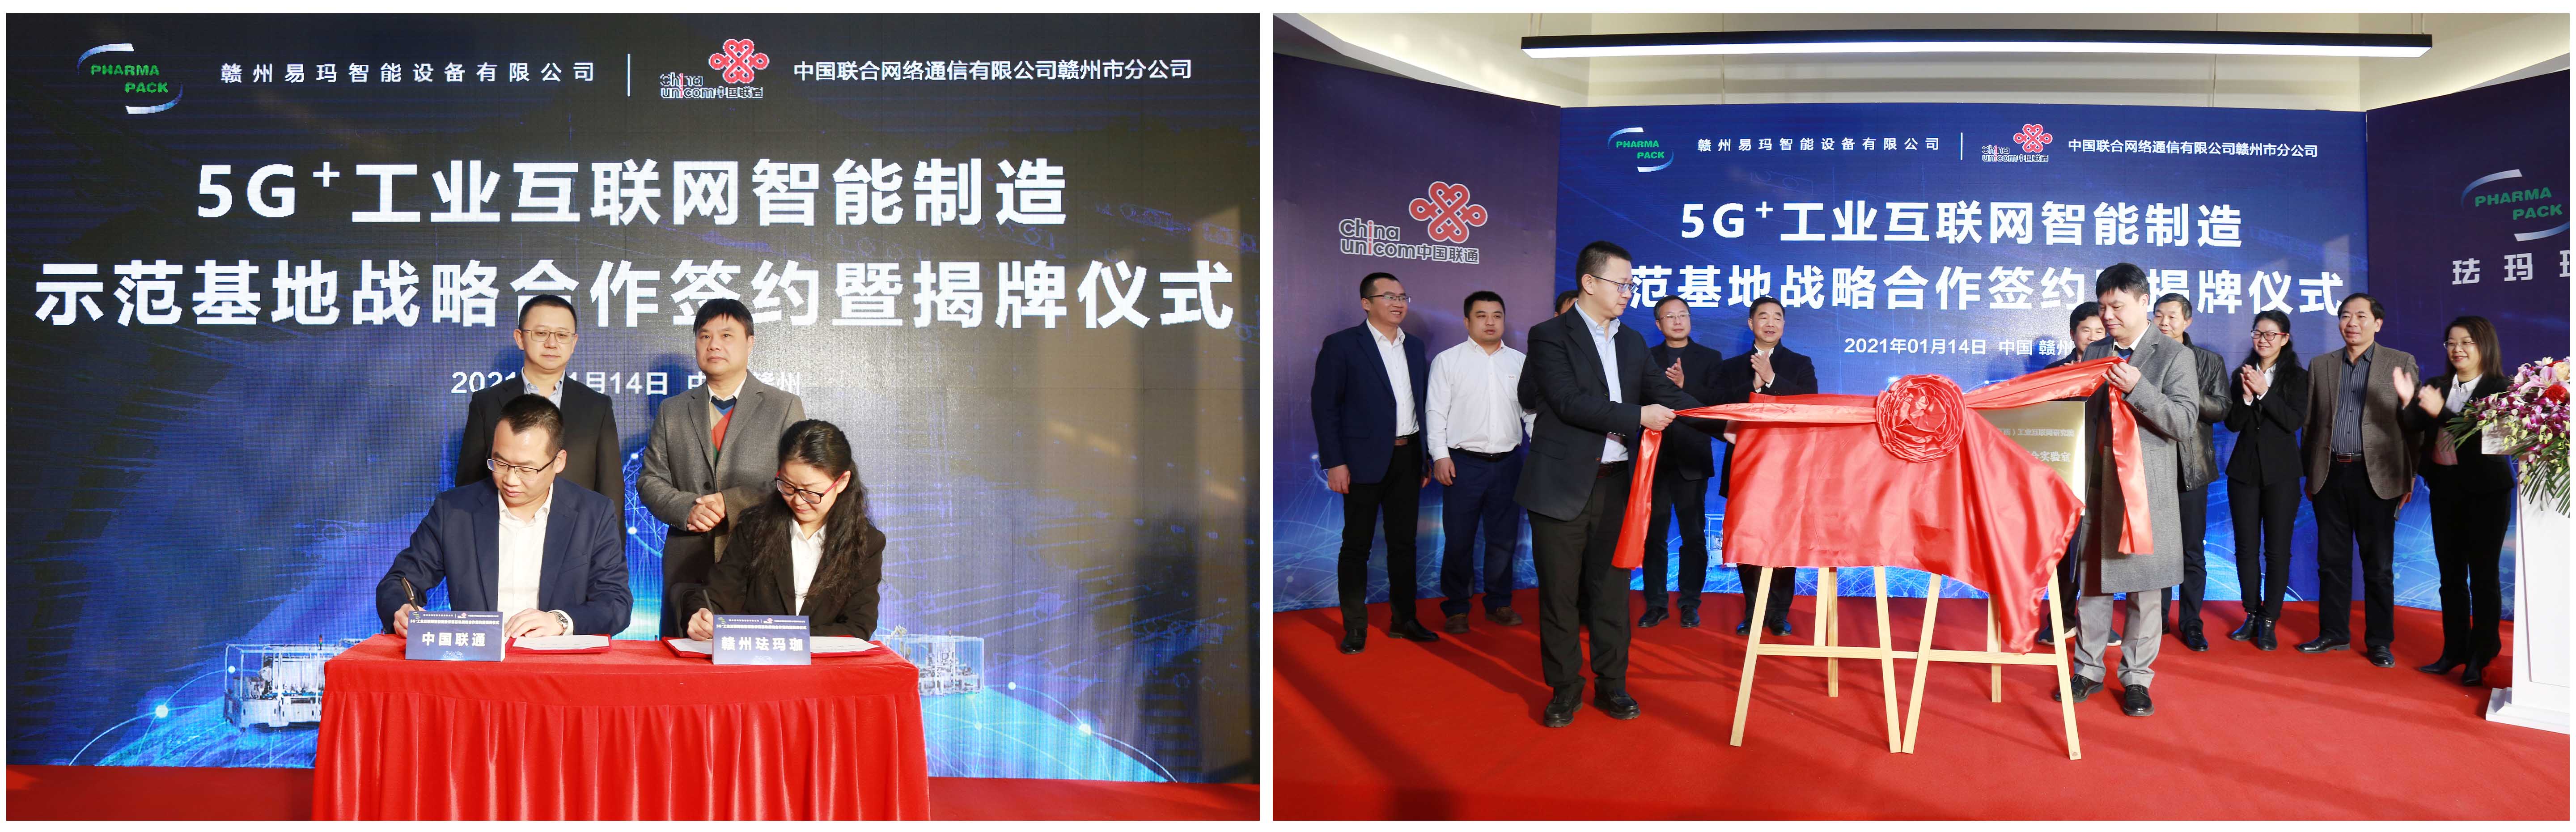 Филиал China Unicom в Ганчжоу сотрудничает с Pharmapack для создания демонстрационной базы интеллектуального производства промышленного Интернета 5G +插图2